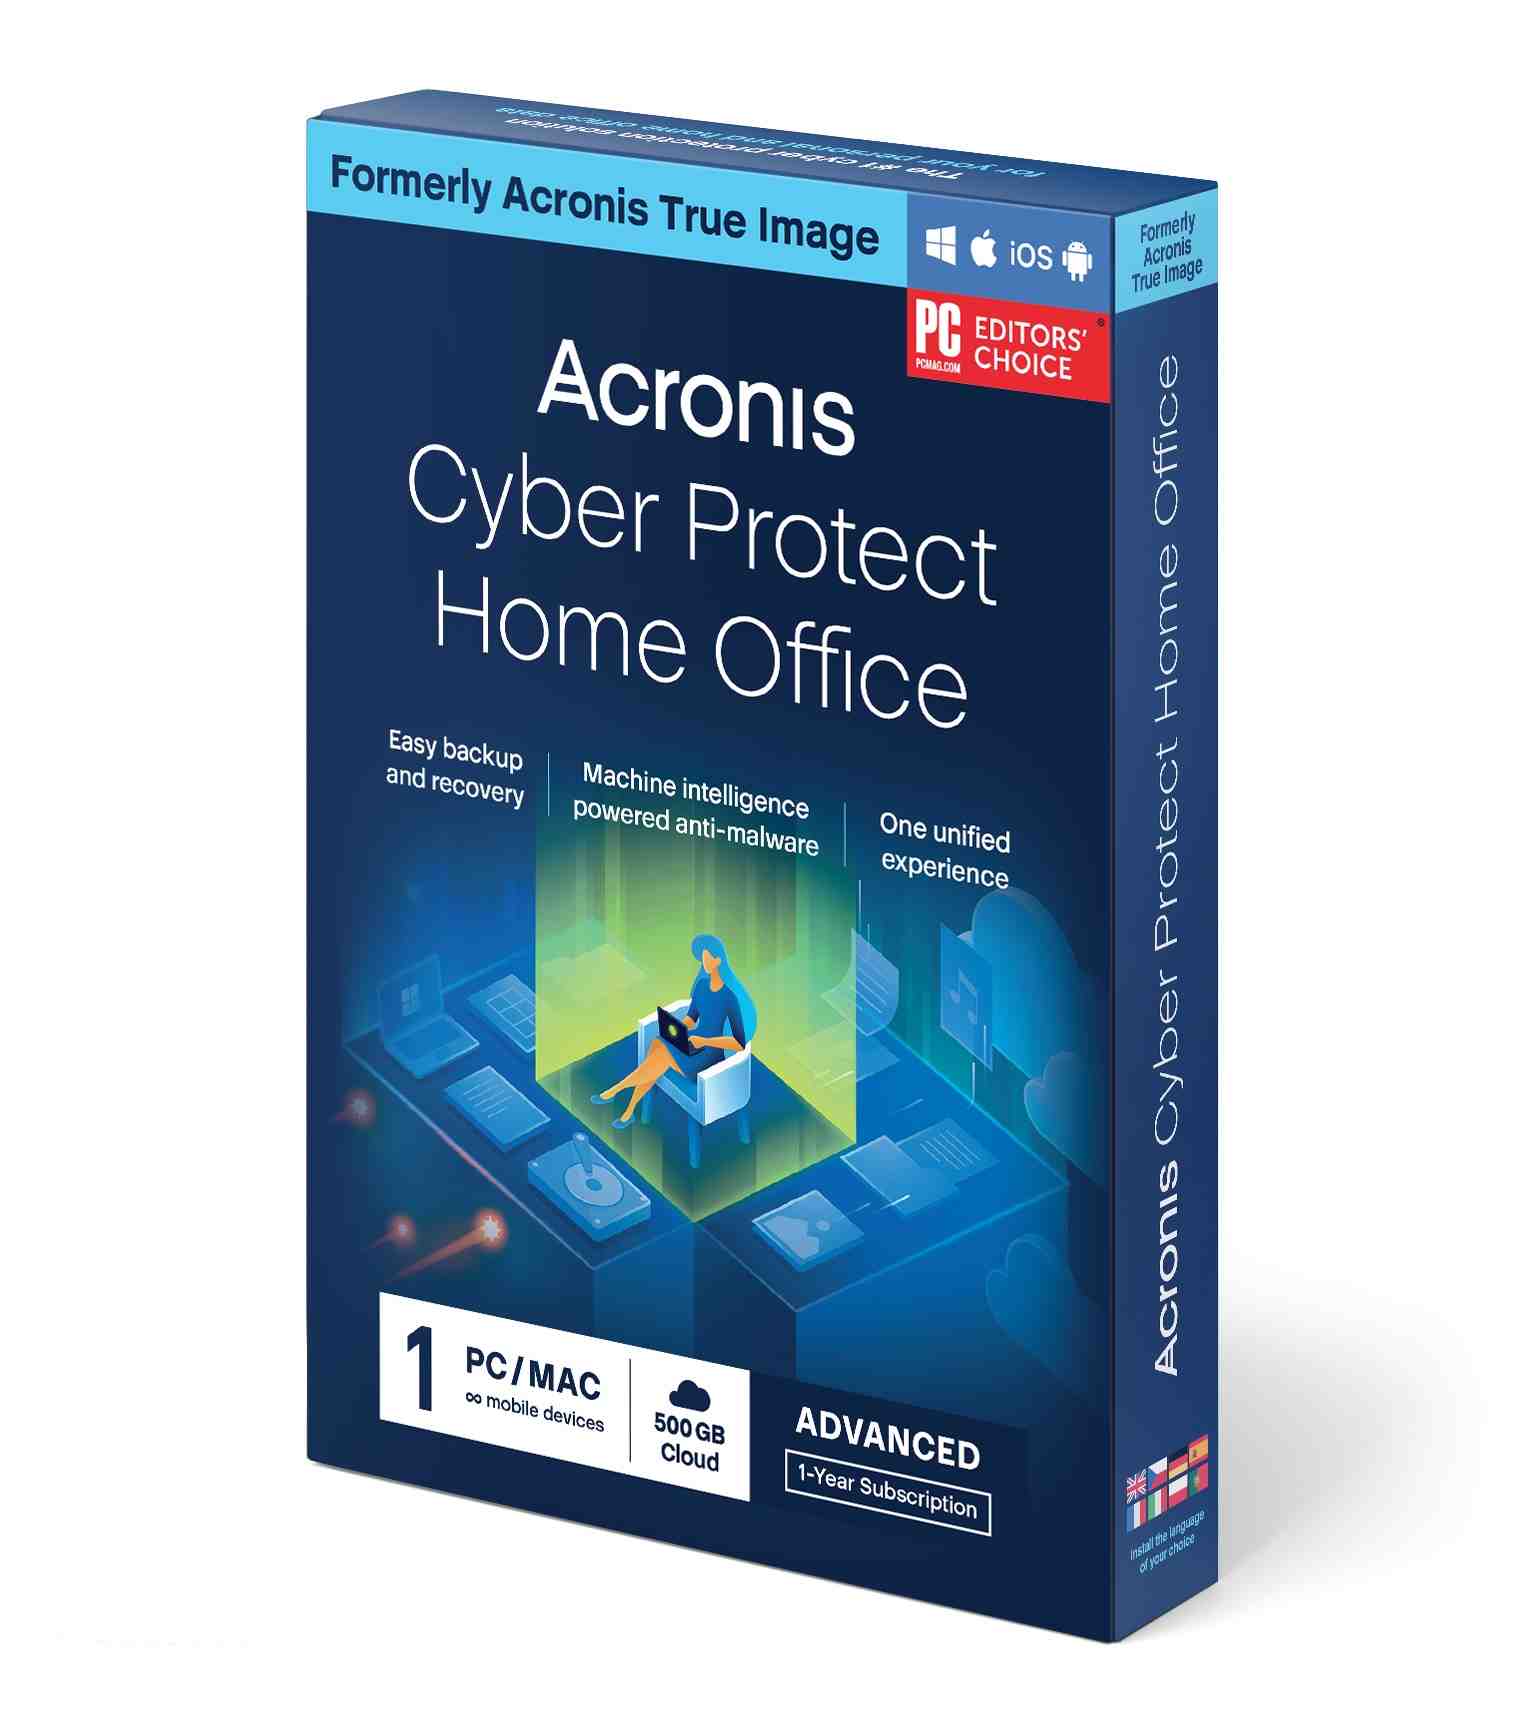 Acronis Cyber Protect Home Office Advanced Subscription 1 počítač + 500 GB úložisko Acronis Cloud - predplatné na 1 rok0 